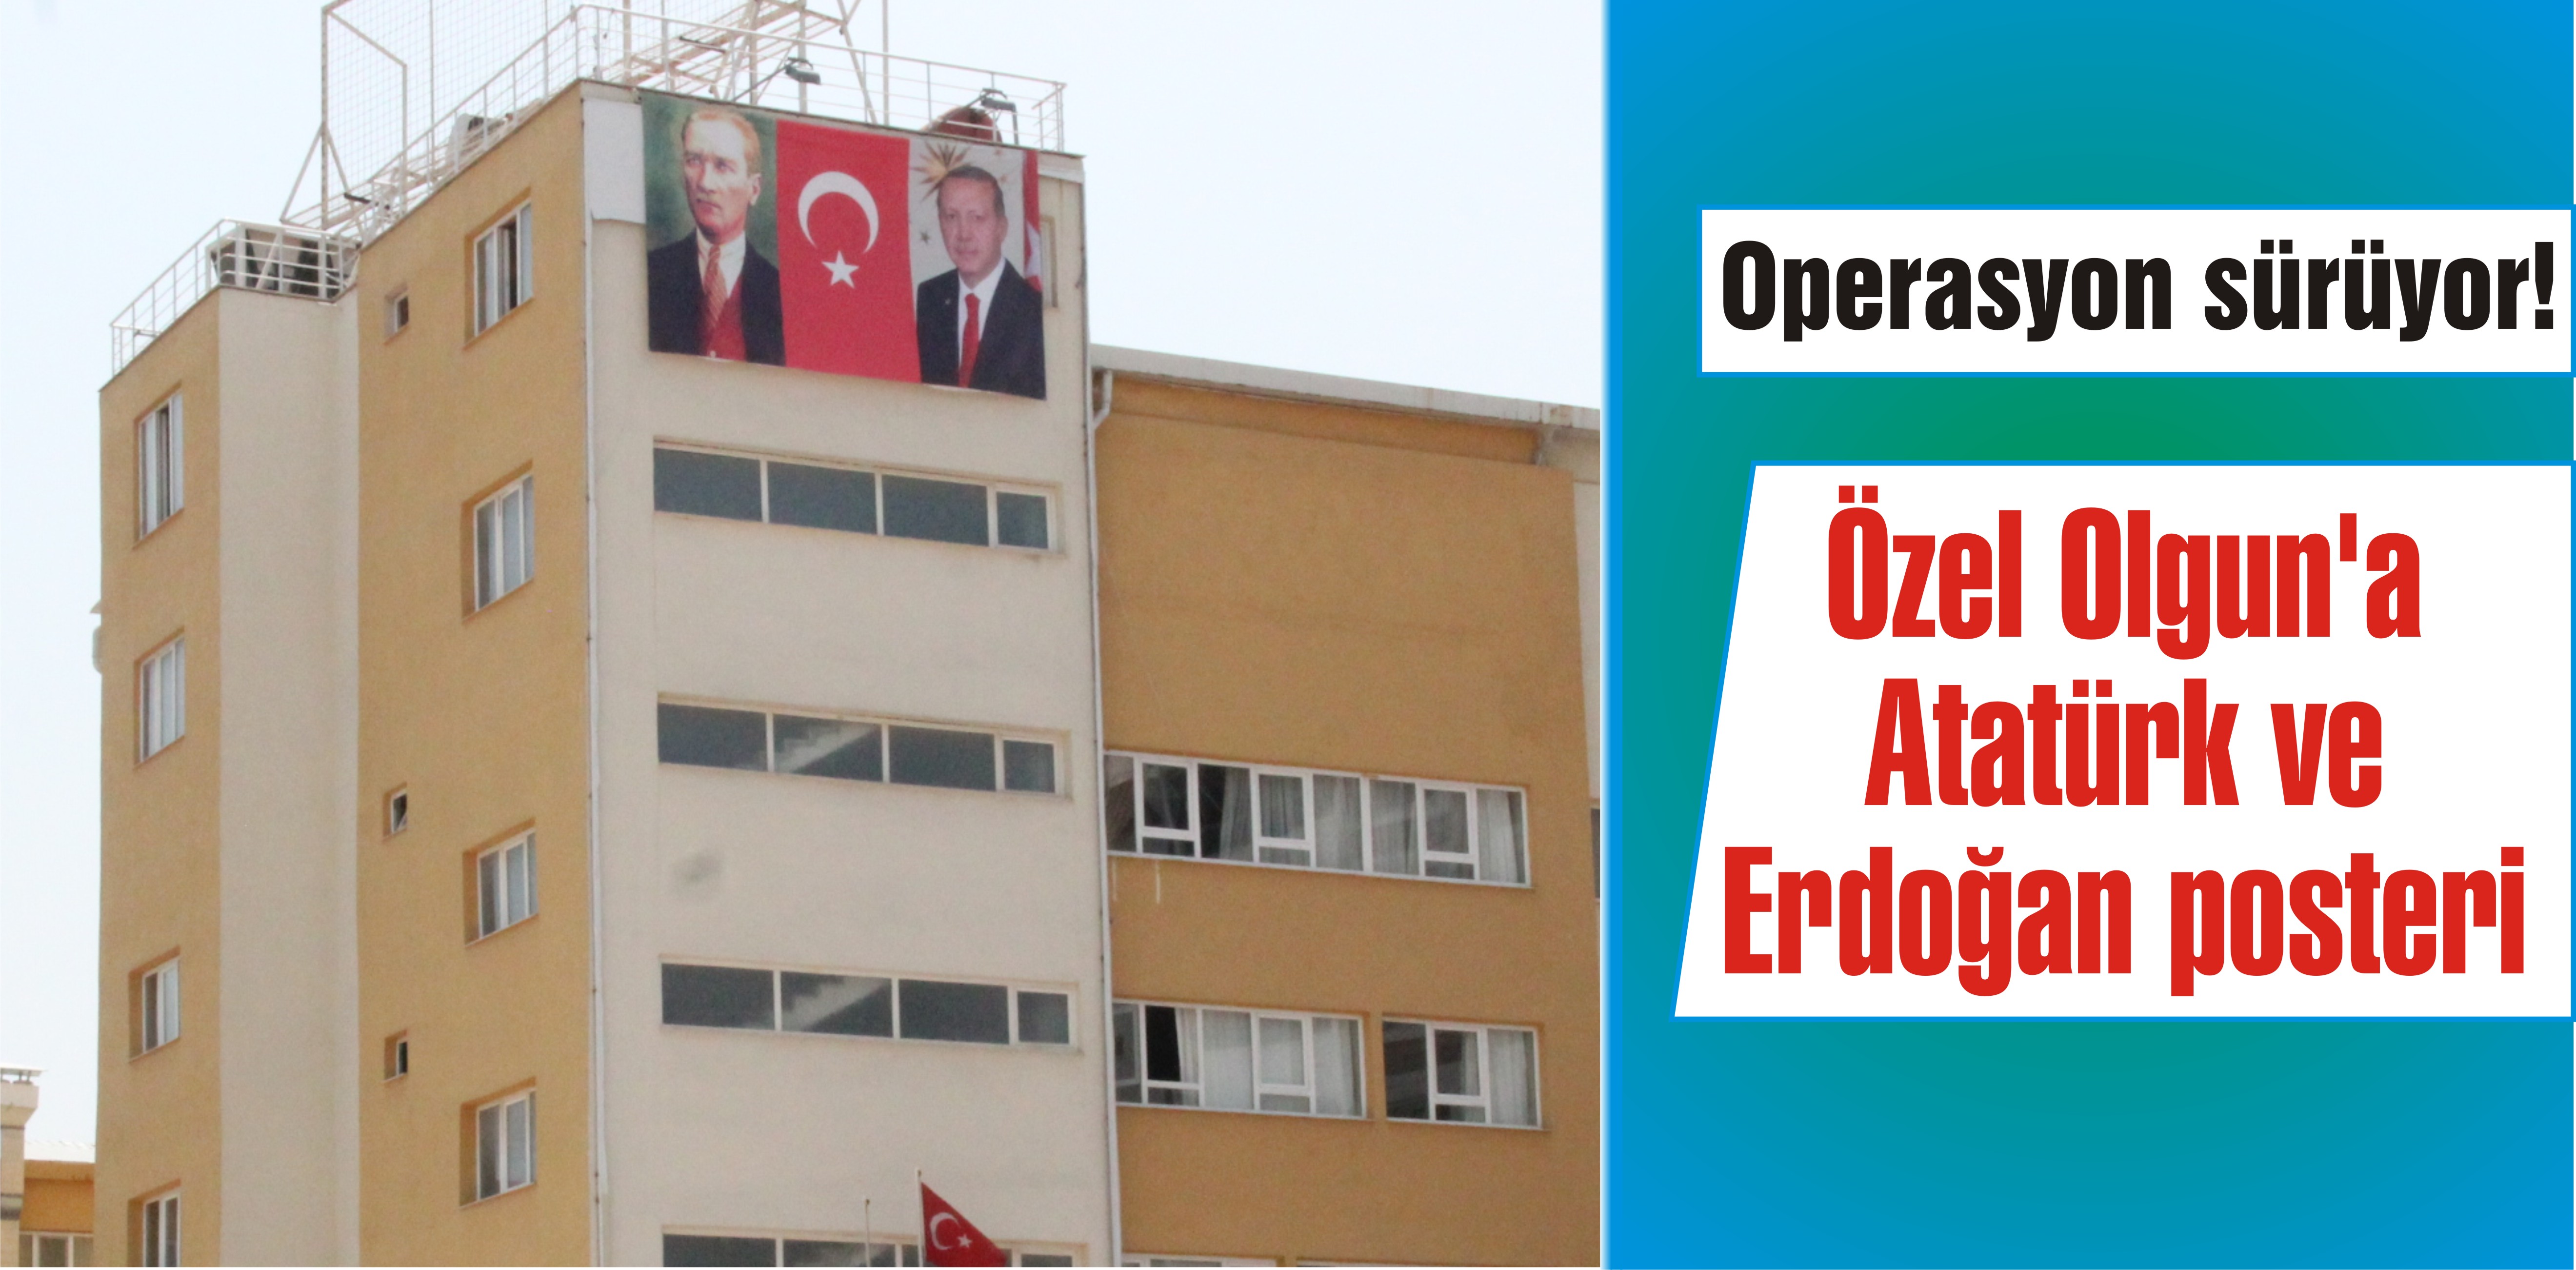 Özel Olgun’a Erdoğan posteri